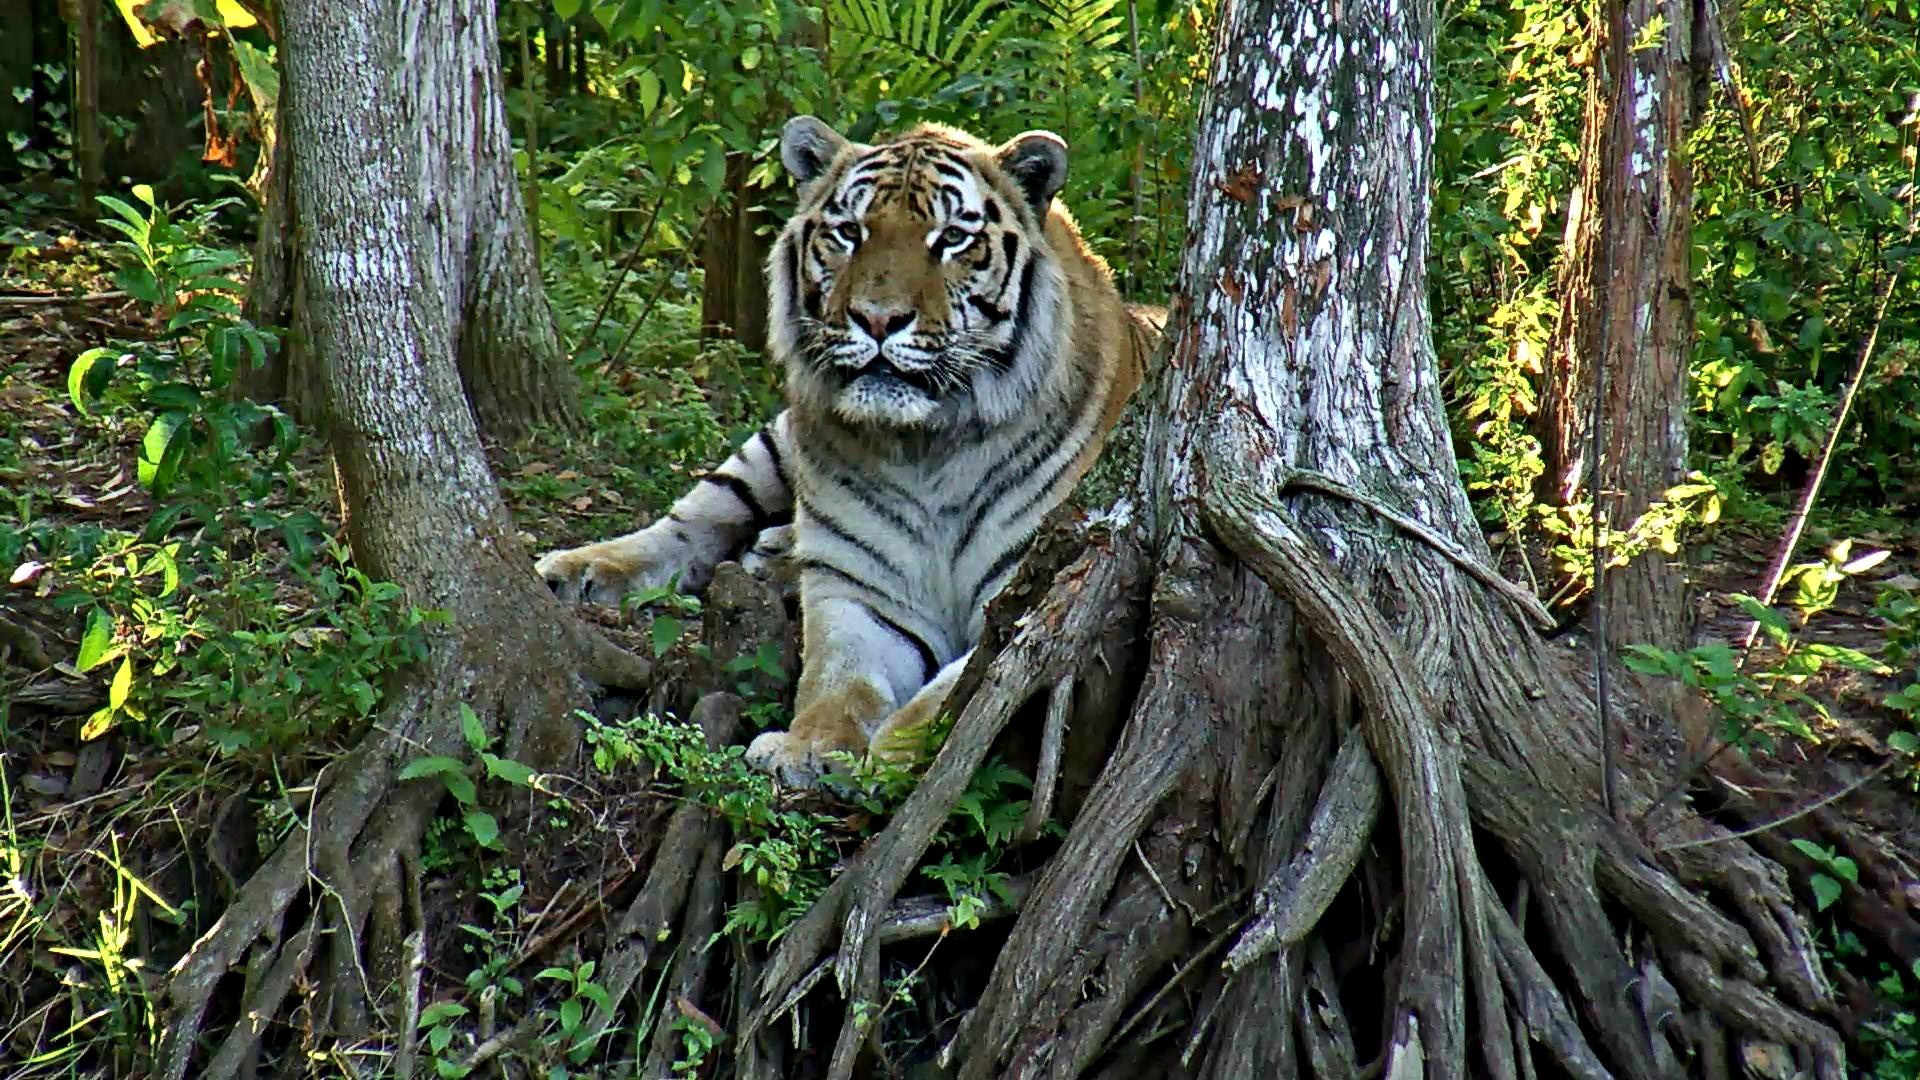 Live Tiger Cam - video of tigers at Big Cat Rescue 